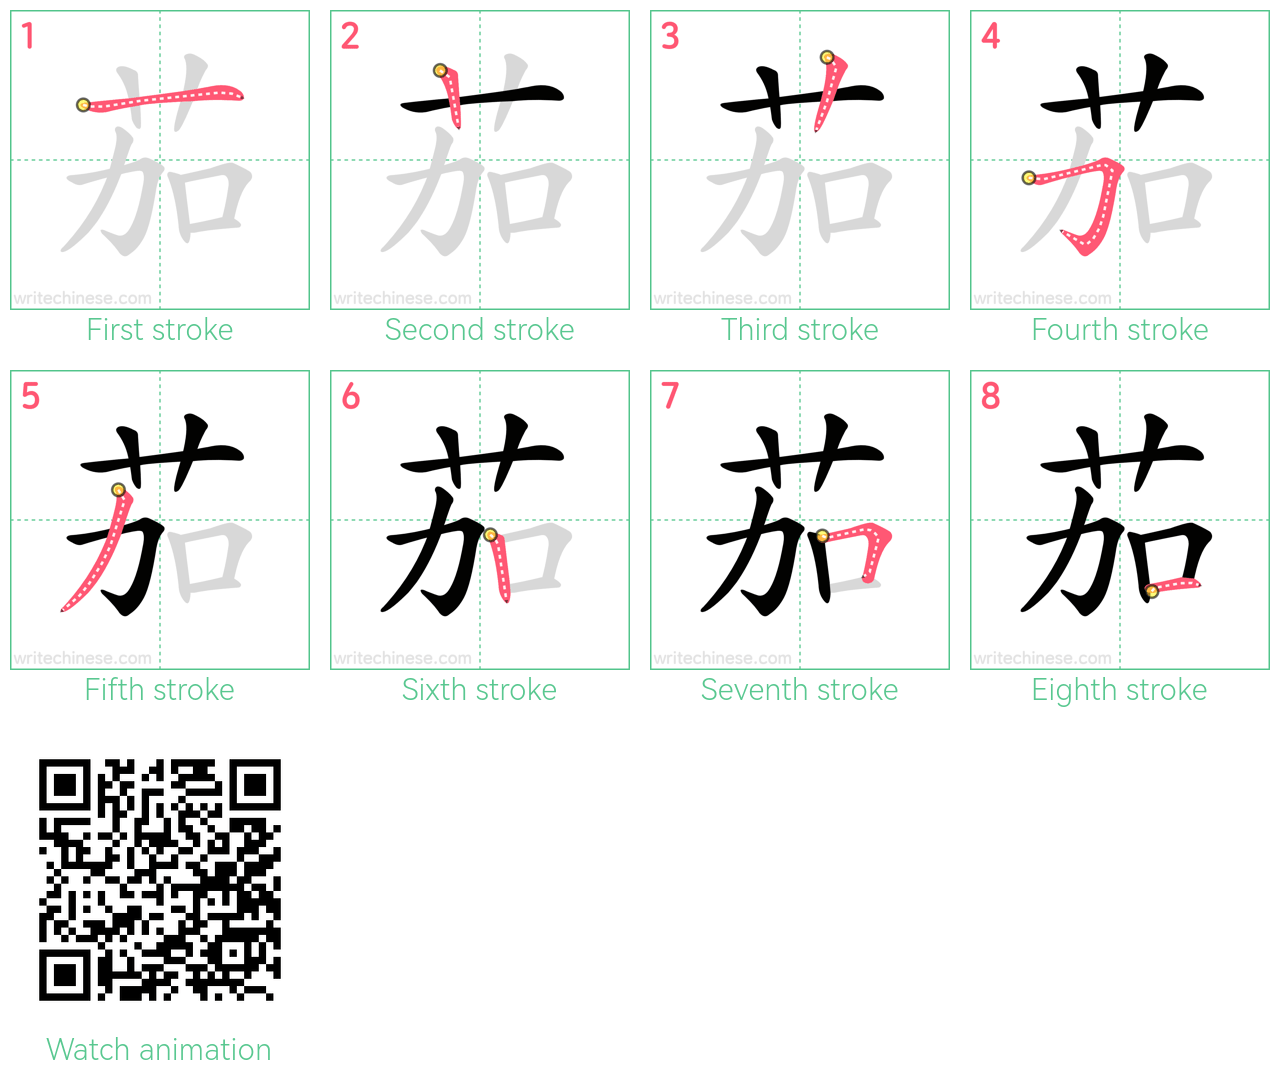 茄 step-by-step stroke order diagrams